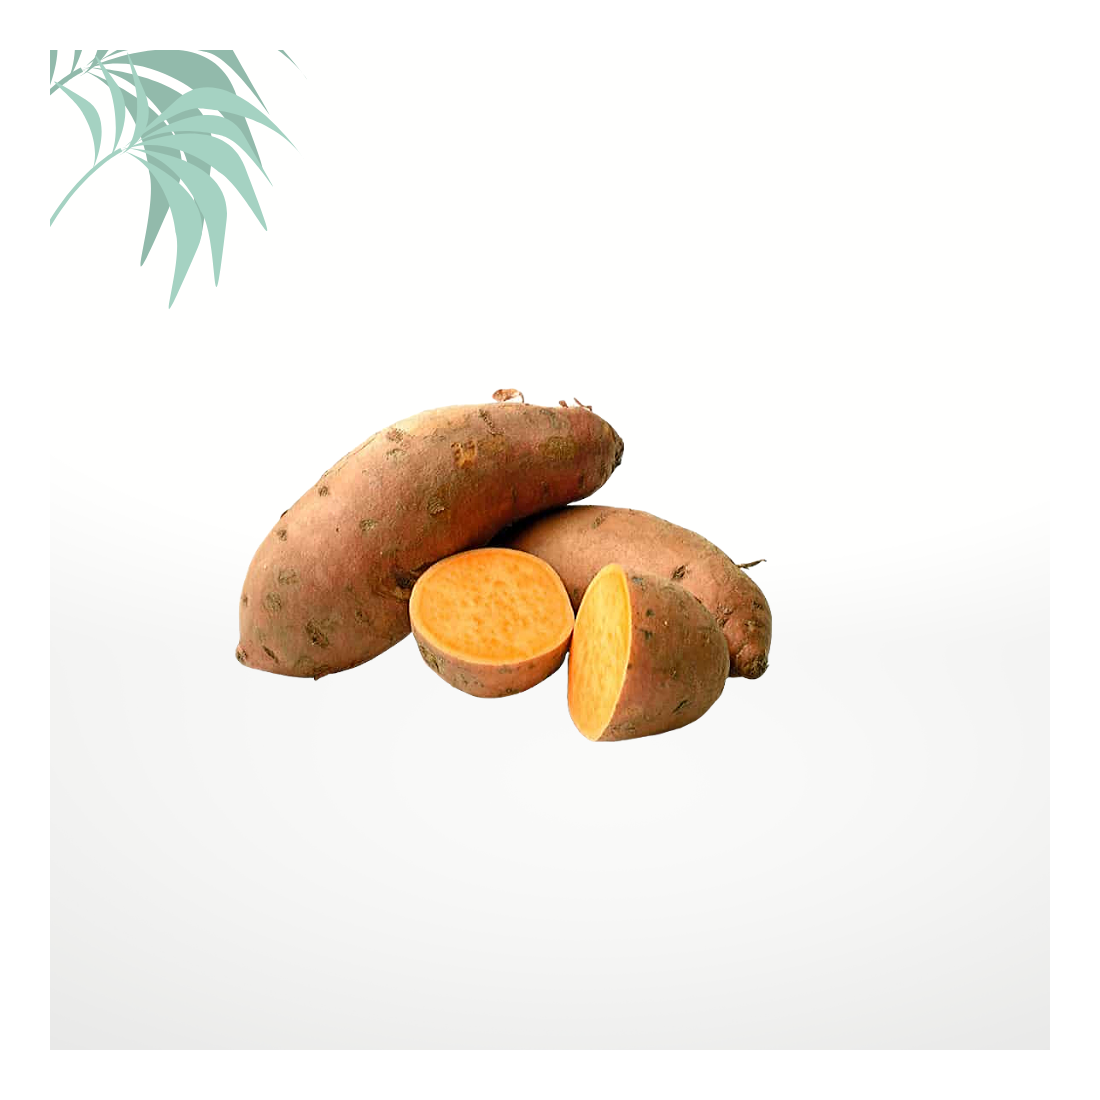 La patate douce, la plus tropicale des pommes de terre